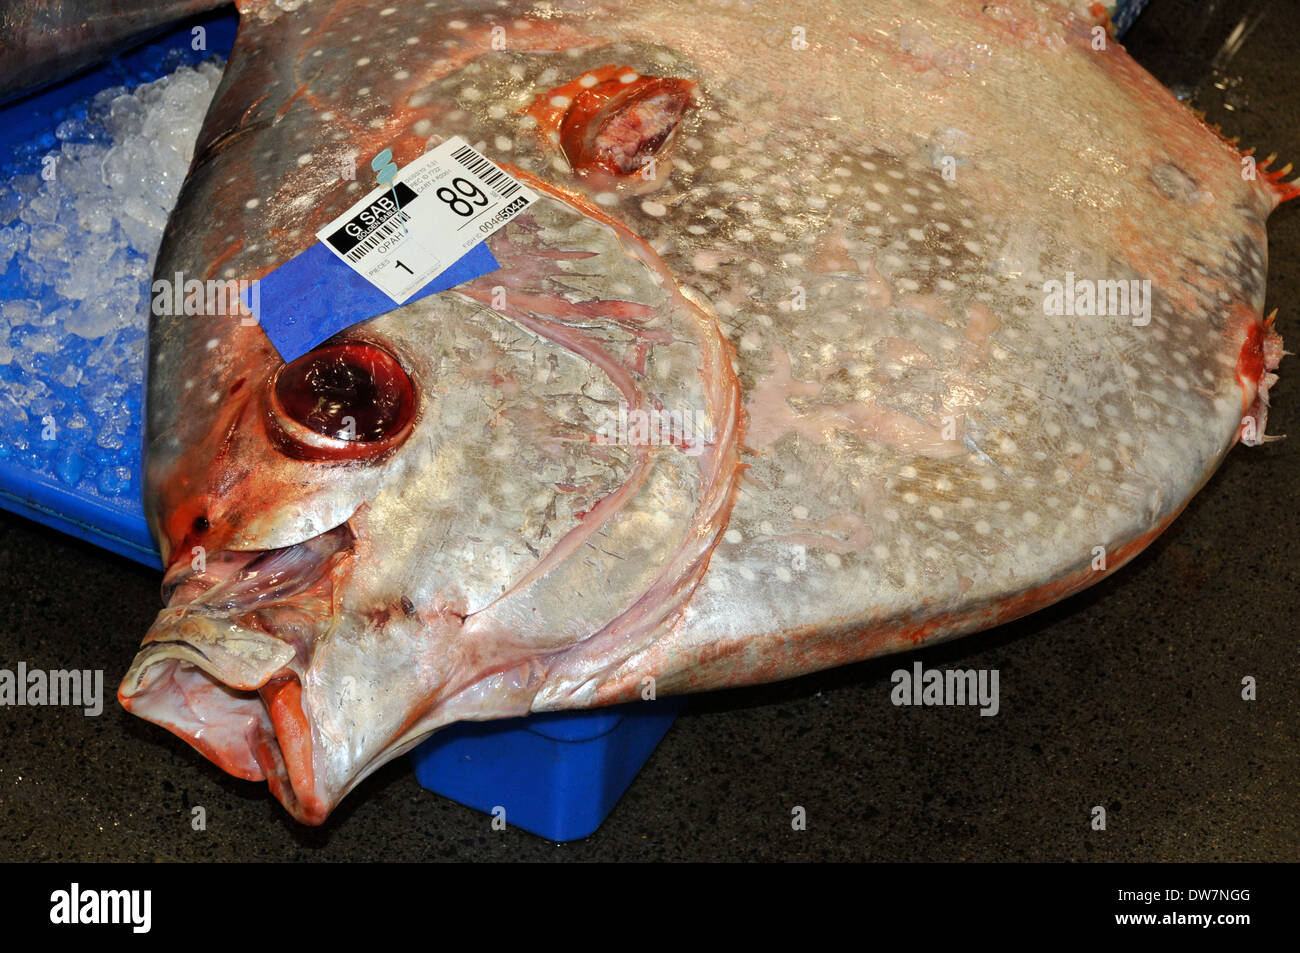 Moonfish morts, le crapet-soleil ou des dieux, Lampris regius, attendre sur la glace pour la vente aux enchères à l'Honolulu Fish Market, Oahu, Hawaii, USA Banque D'Images